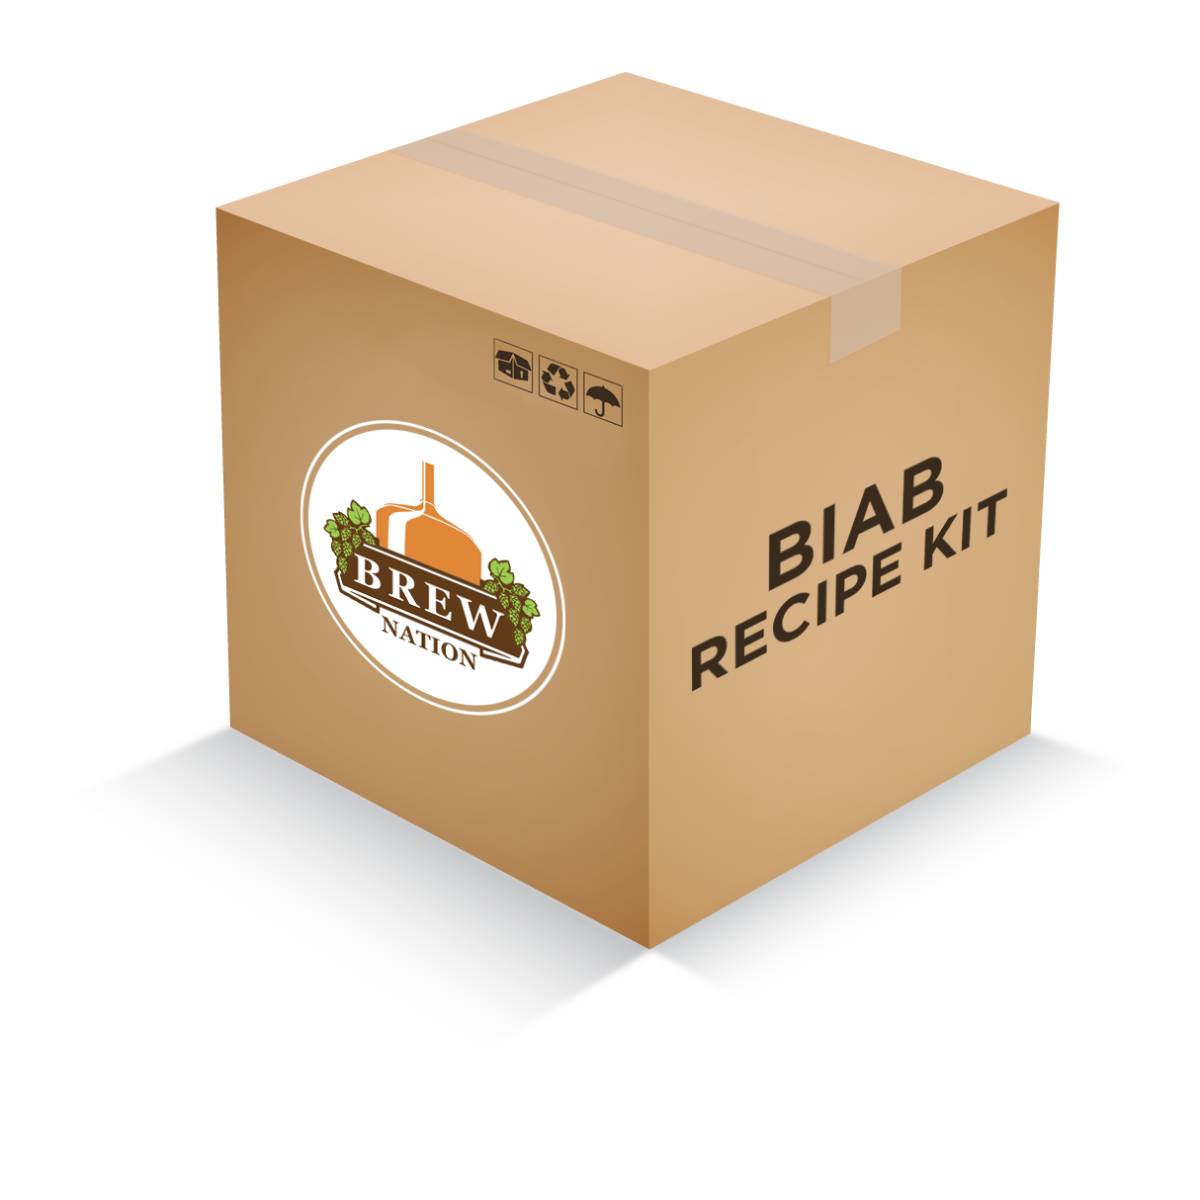 Belgian Wit Recipe Kit (BIAB)